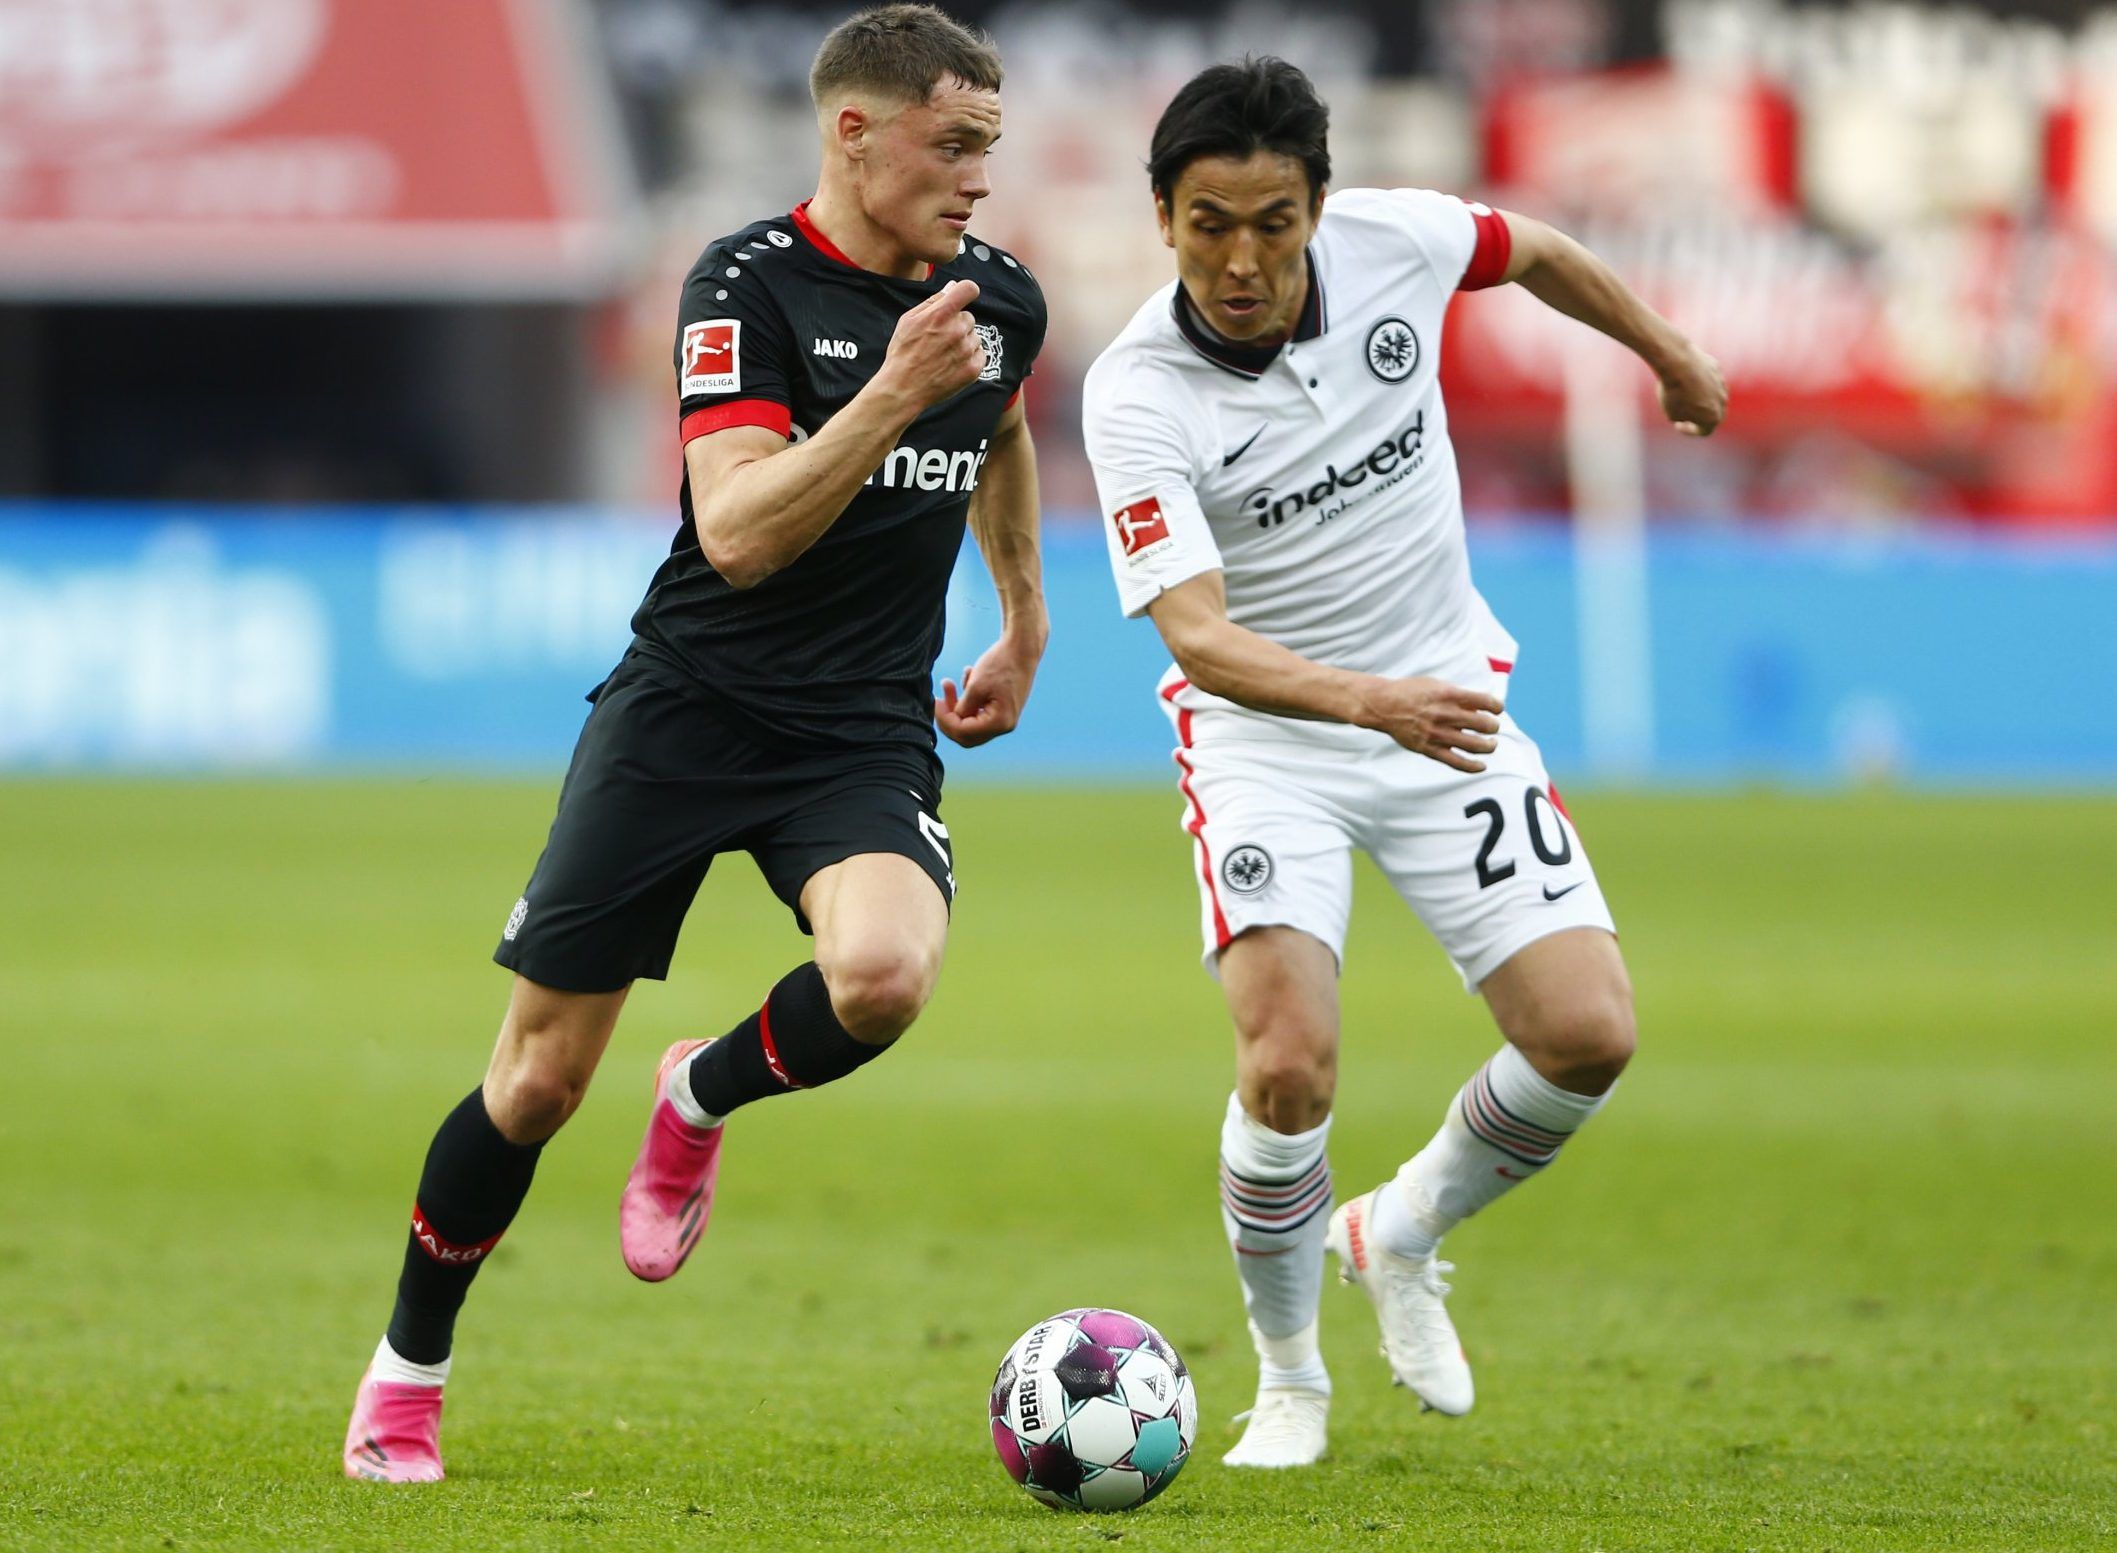 Bayern Munich's Florian Wirtz in action against Frankfurt in the Bundesliga